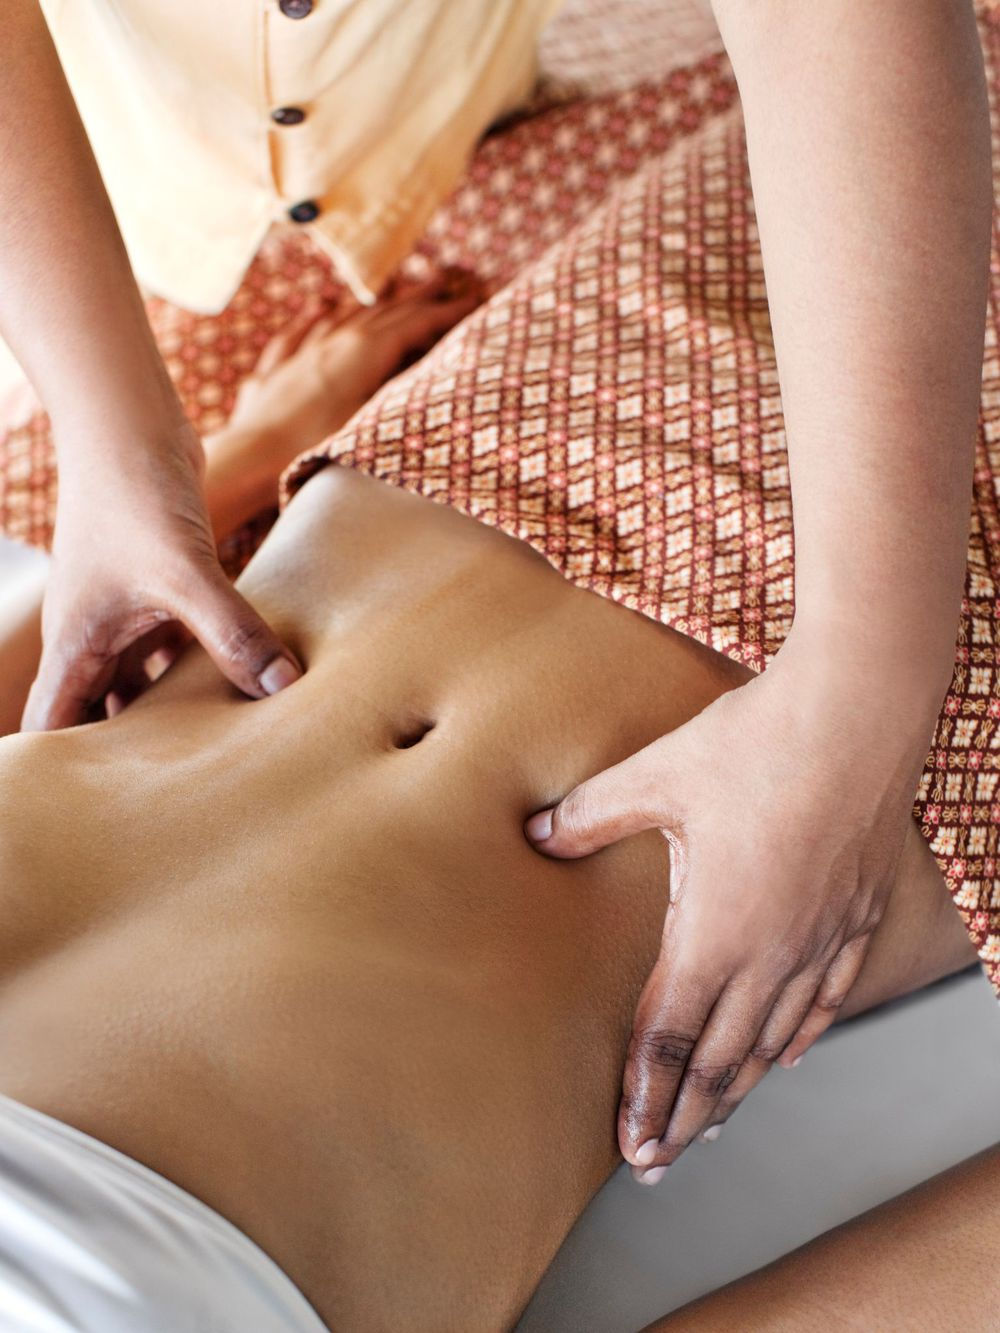 Việc massage vùng bụng rất tốt cho hệ tiêu hóa, tránh đầy hơi và hạn chế tích tụ mỡ. Ảnh: Getty Images. 